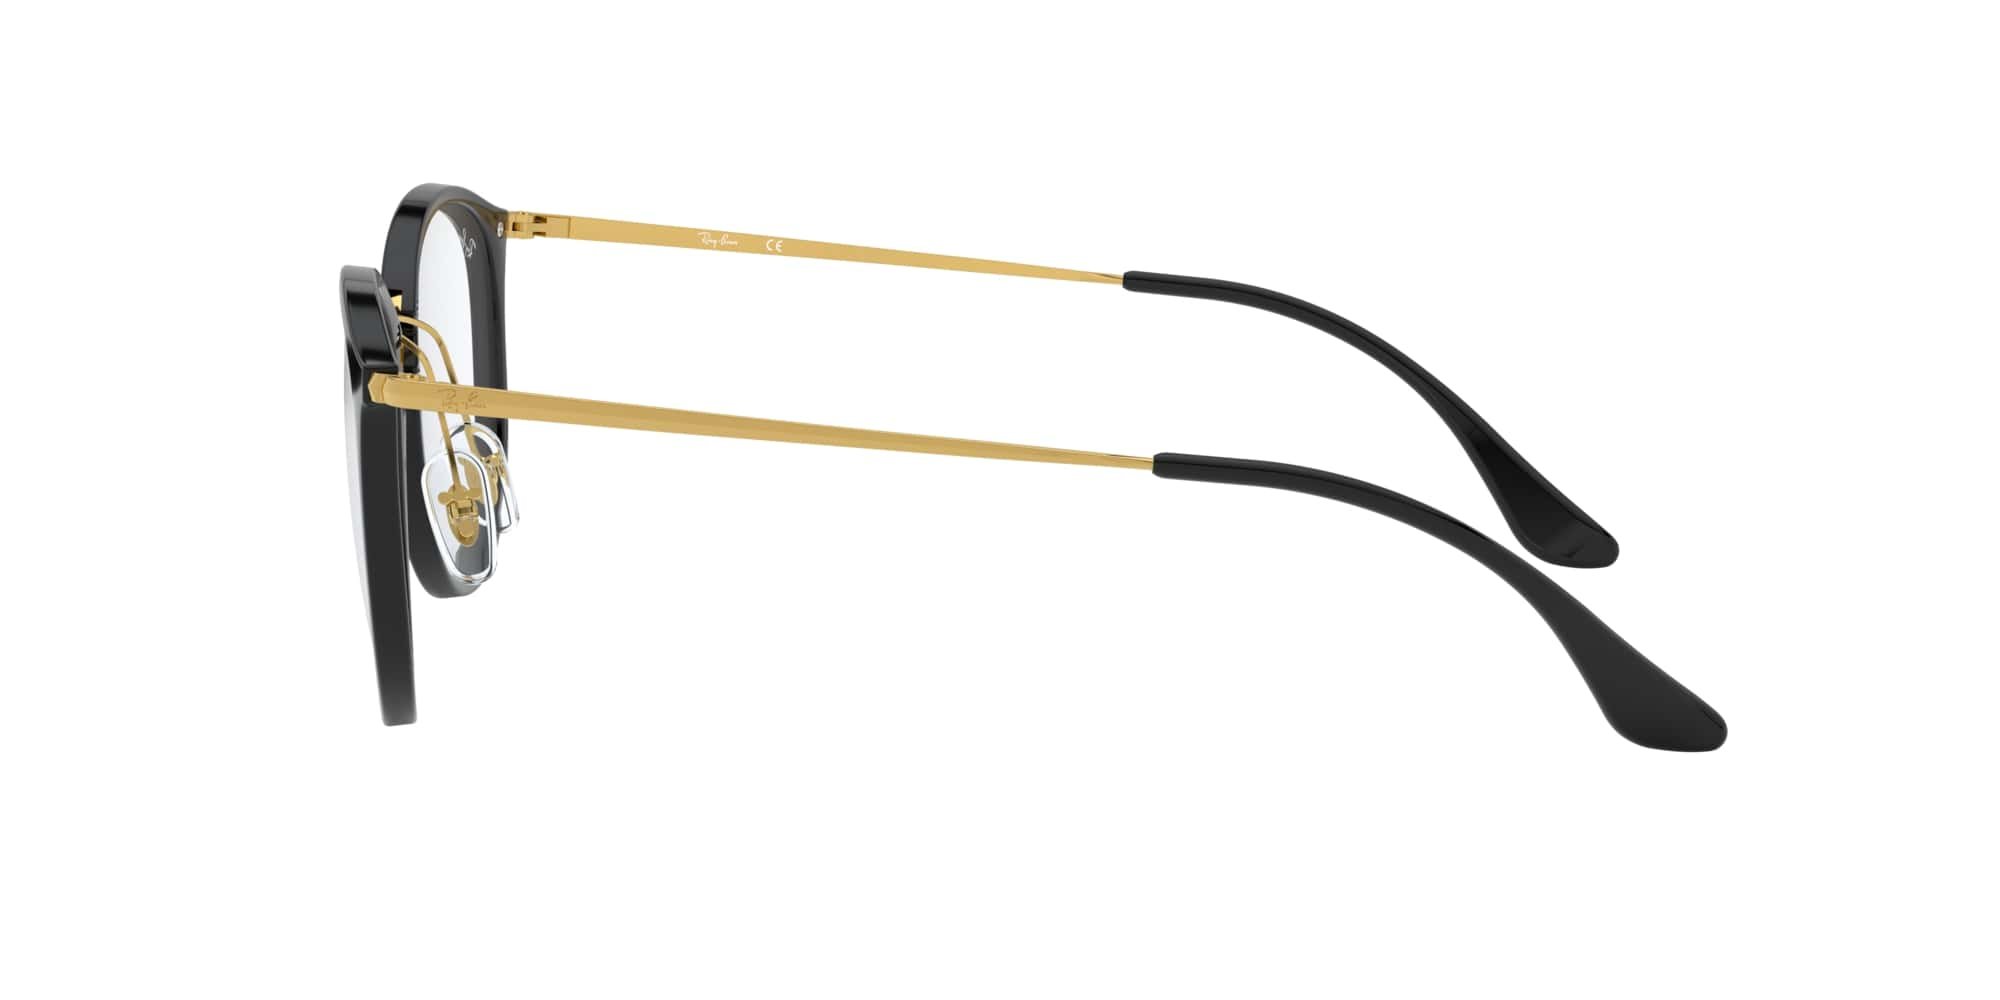 Das Bild zeigt die Korrektionsbrille RX7140 2000 von der Marke Ray Ban in schwarz/gold.